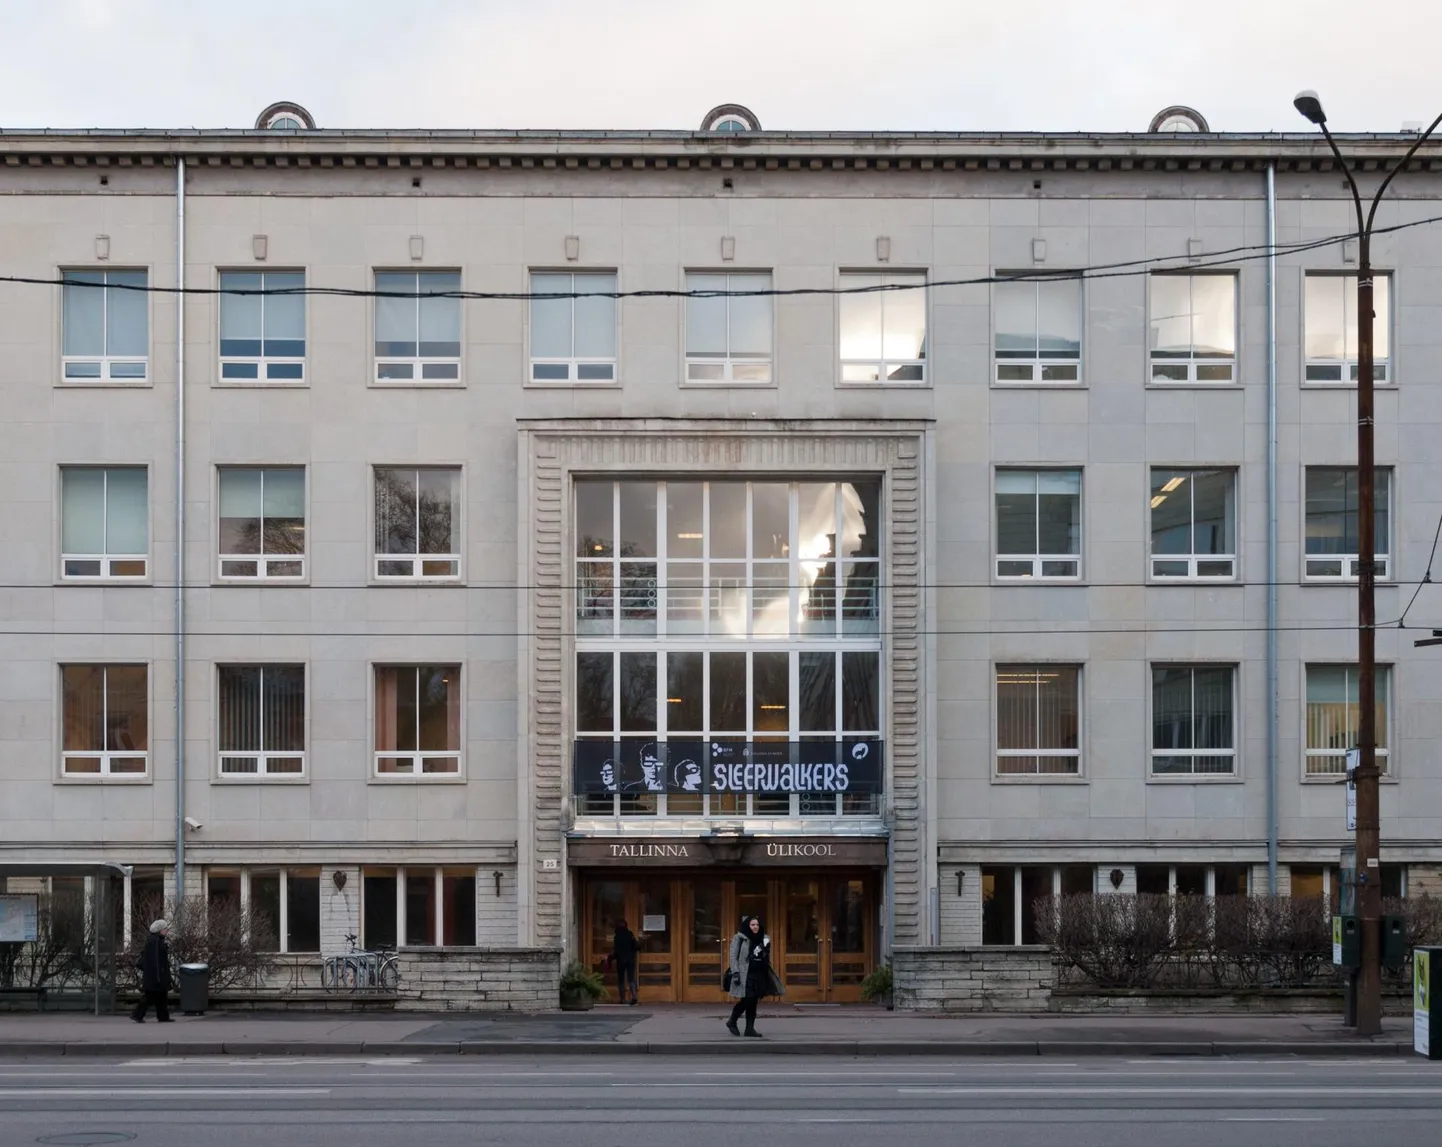 Tallinna Ülikooli Terra hoone